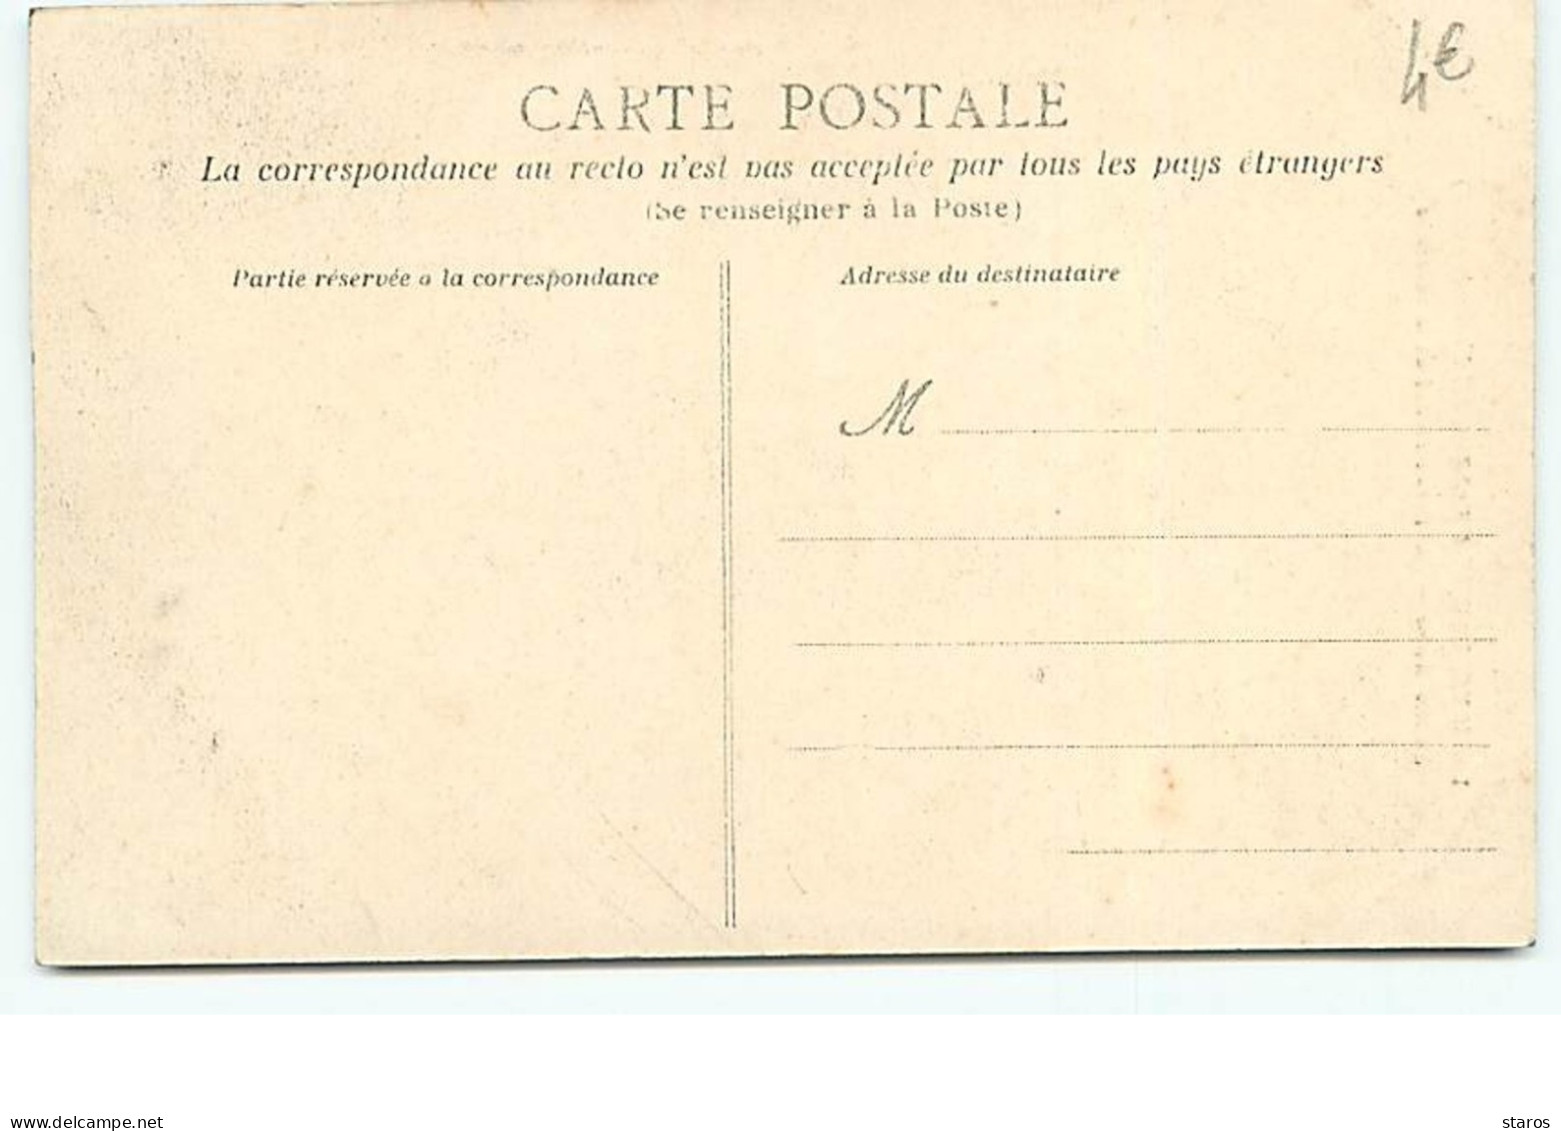 Les Inventaires à NANTES (27 Novembre 1906) - Sainte-Anne - Porte Extérieure De La Sacristie - Nantes